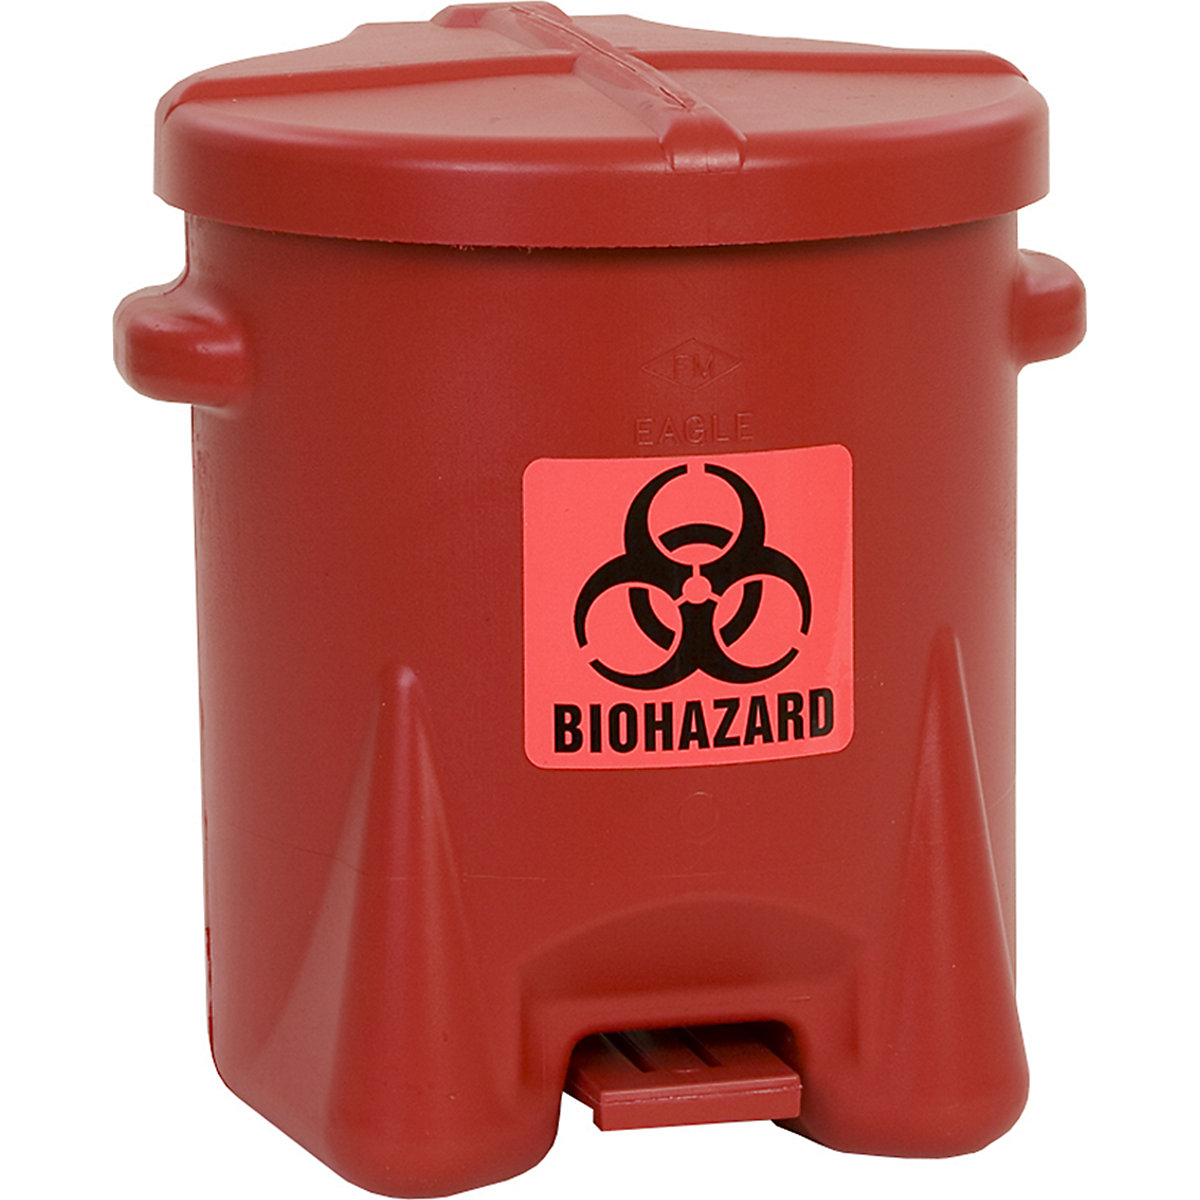 Recipiente de segurança em PE para eliminar resíduos com risco biológico - Justrite